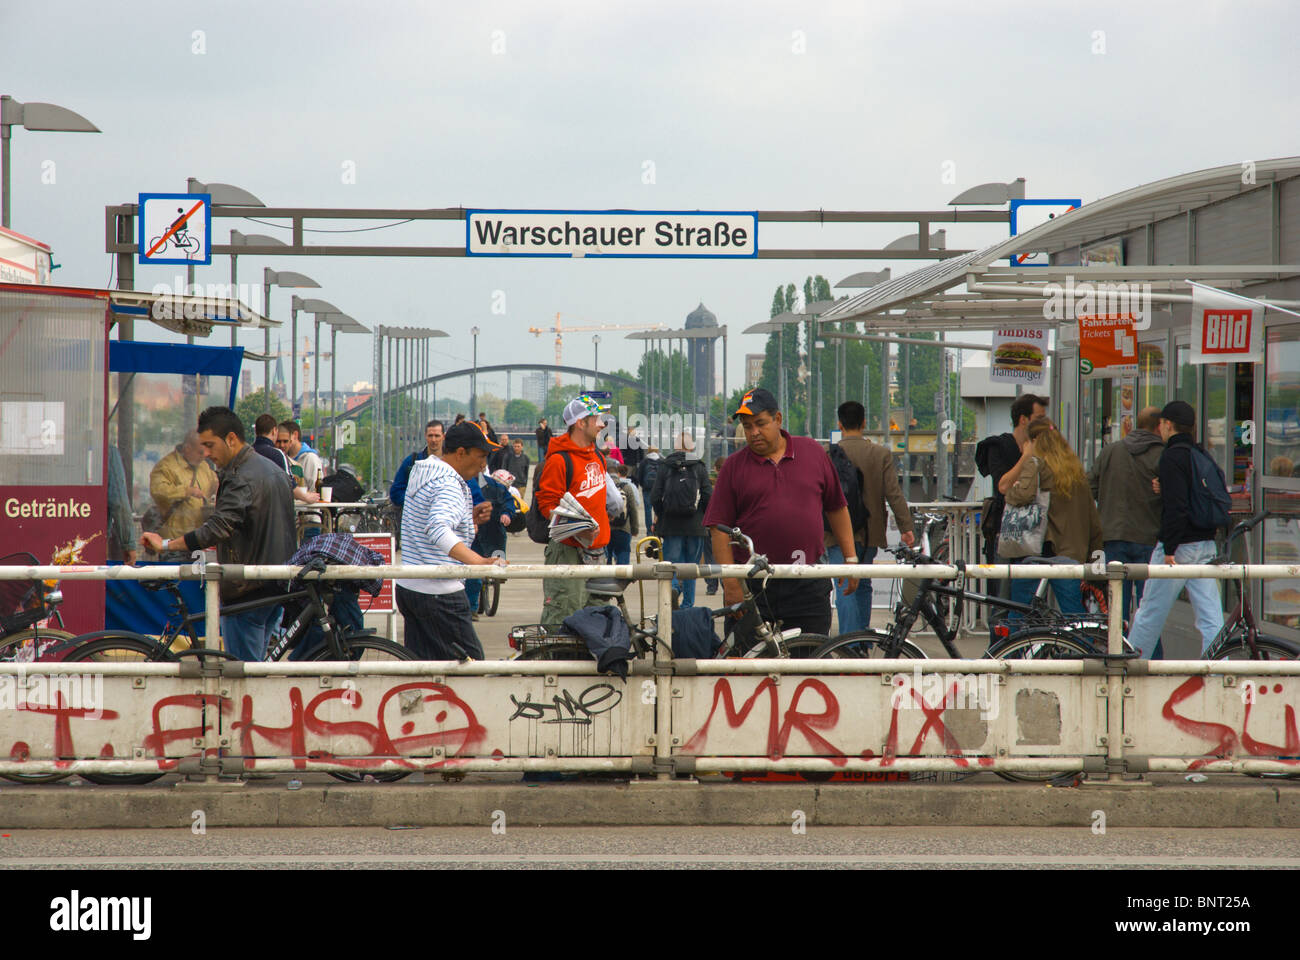 Warschauer Strasse S-bahn station exterior Friedrichshain east Berlin Germany Europe Stock Photo